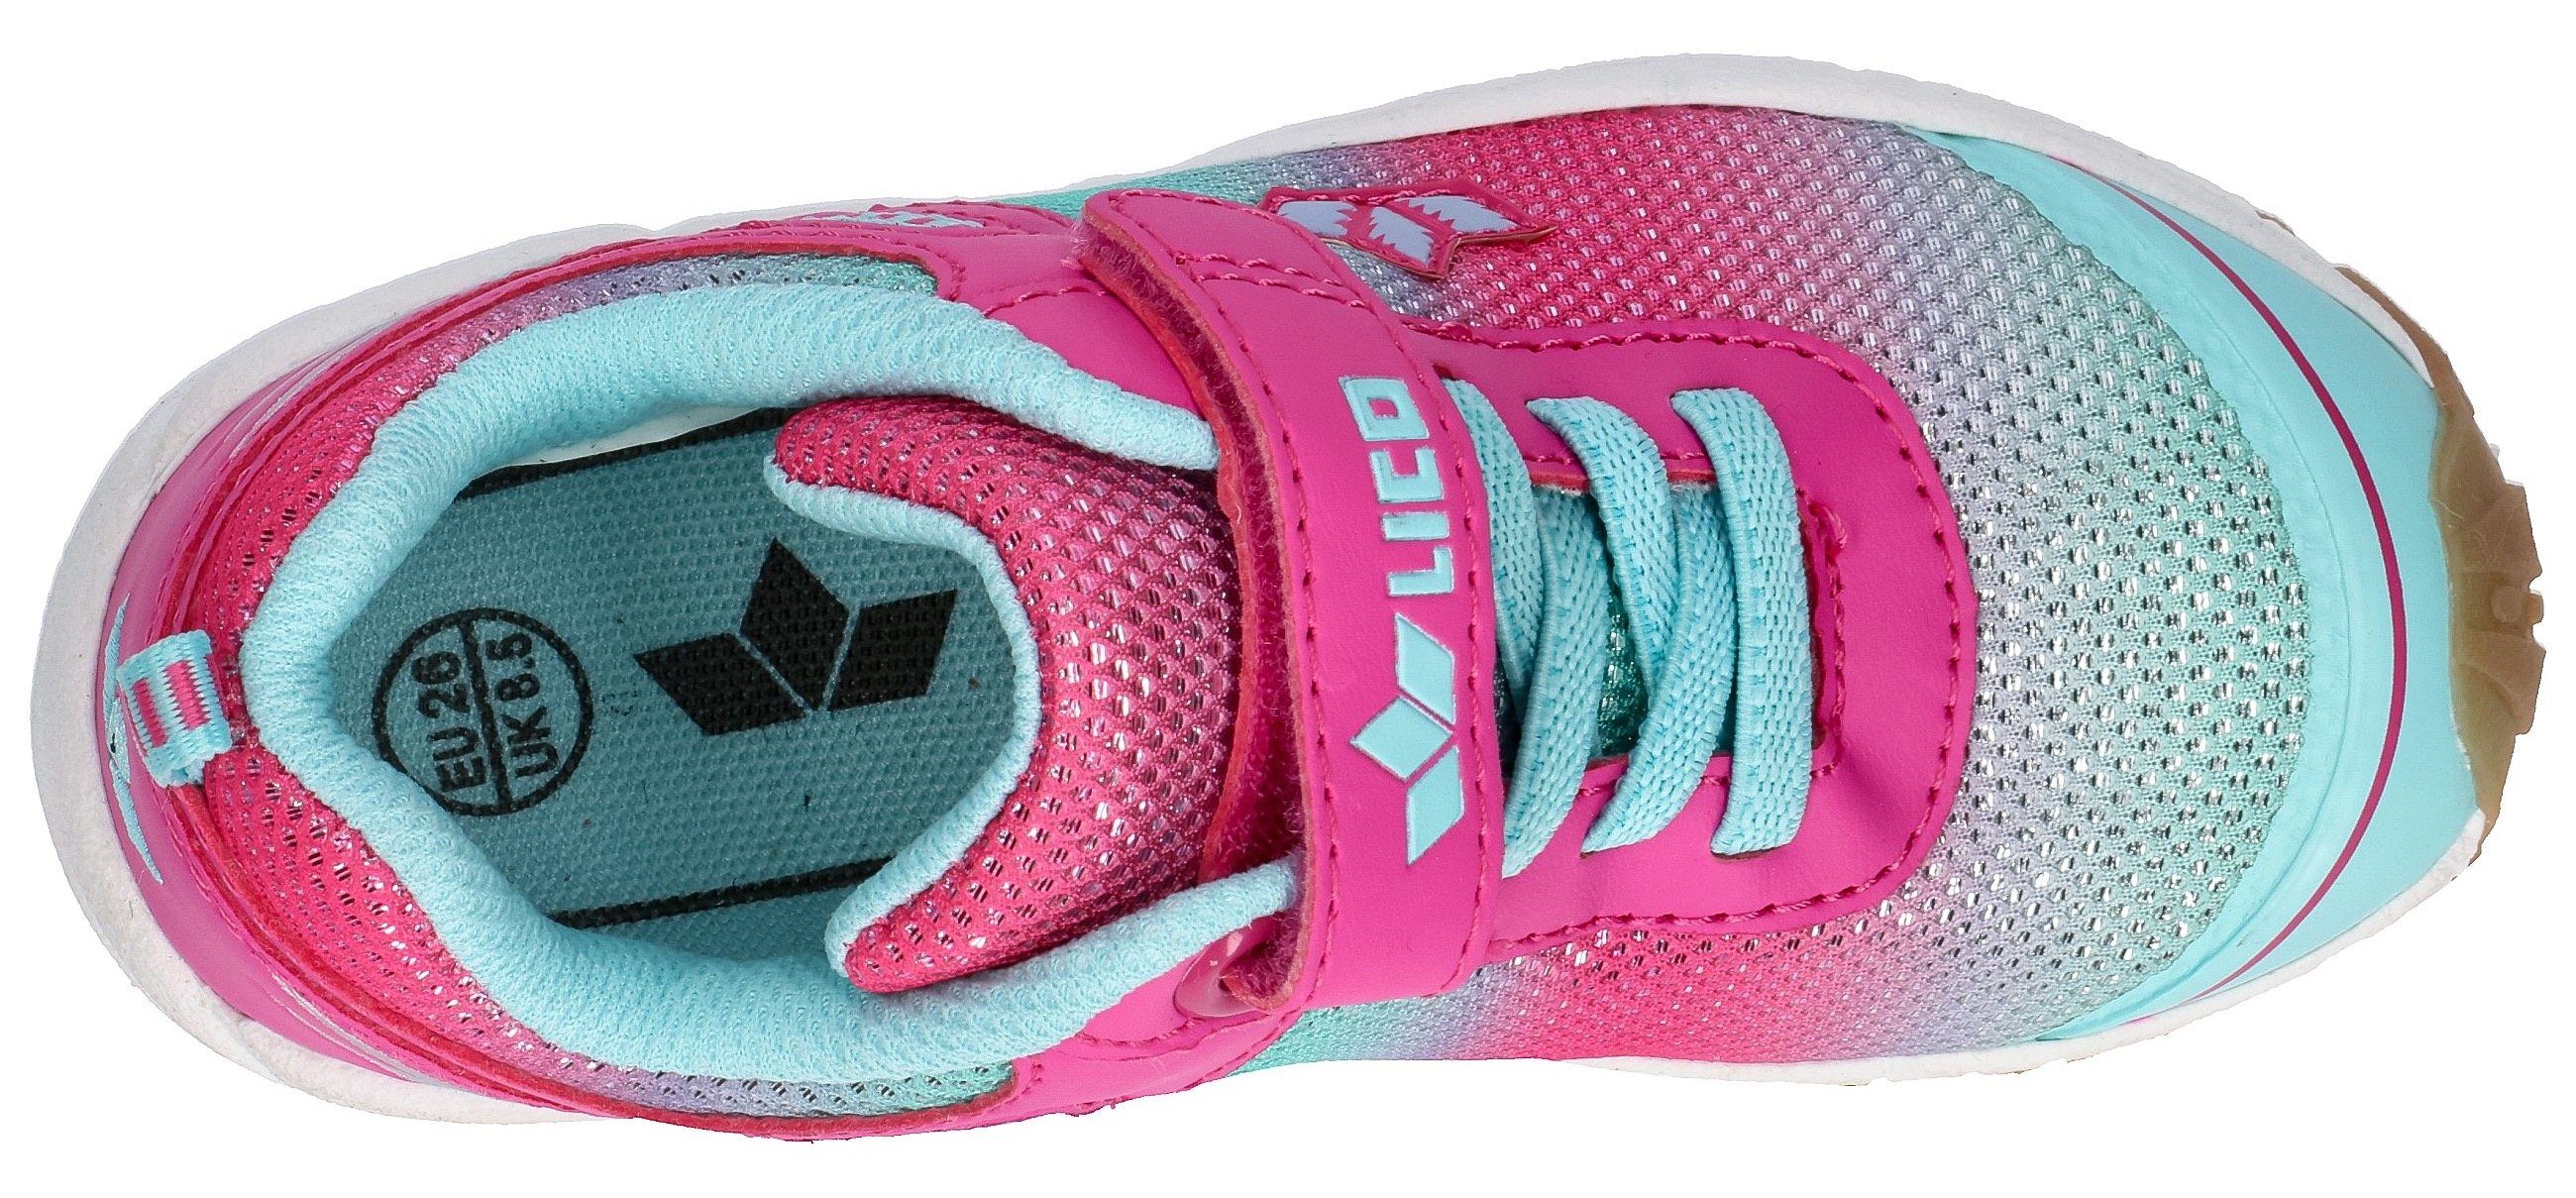 Lico Barney VS Sneaker mit modischem pink-türkis-Glitzer Farbverlauf